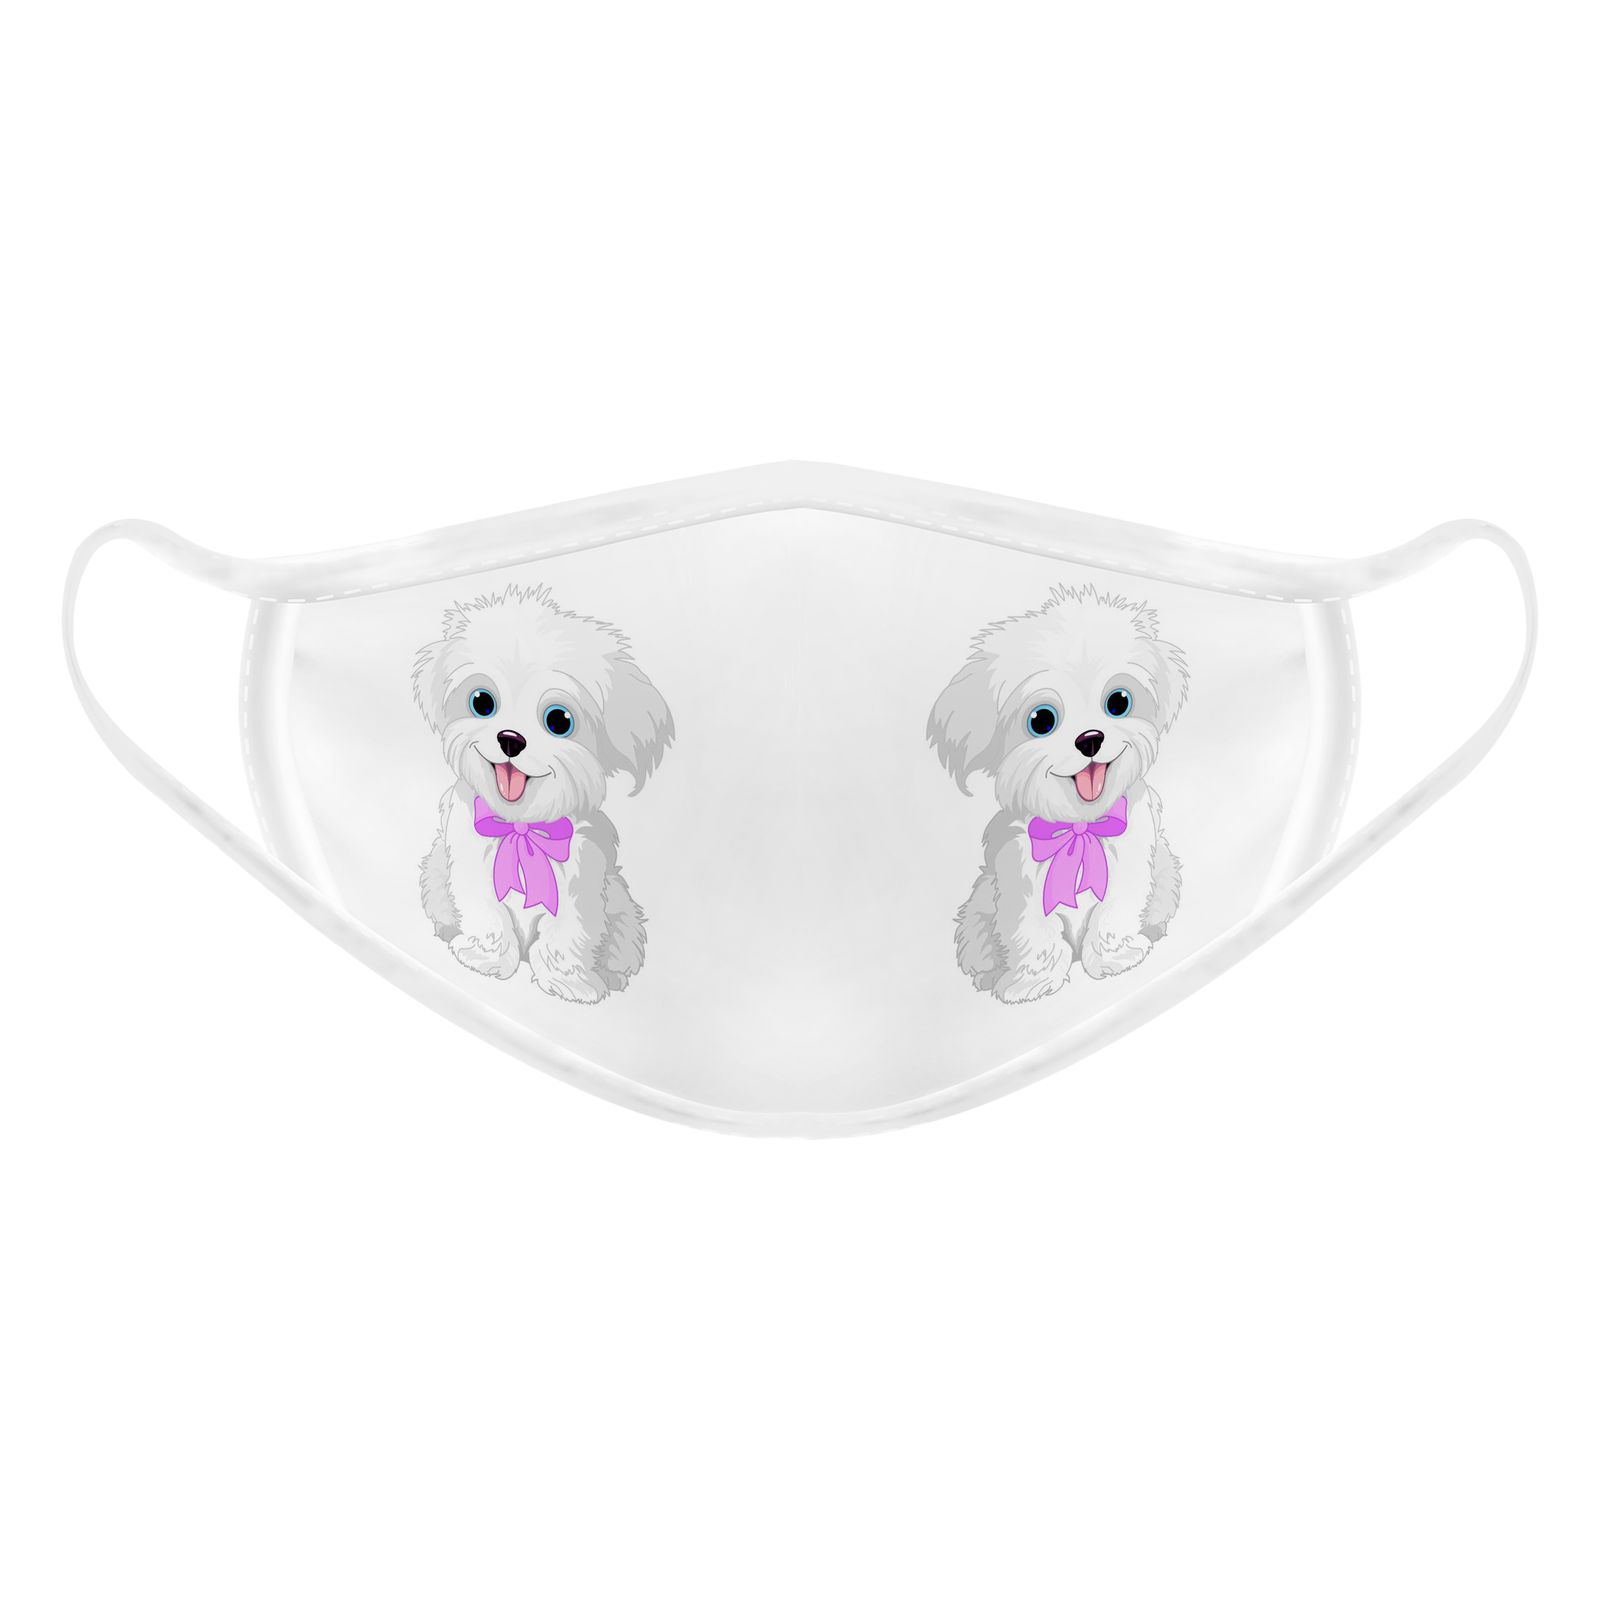 ماسک تزیینی بچگانه طرح سگ کد 617015 -  - 1